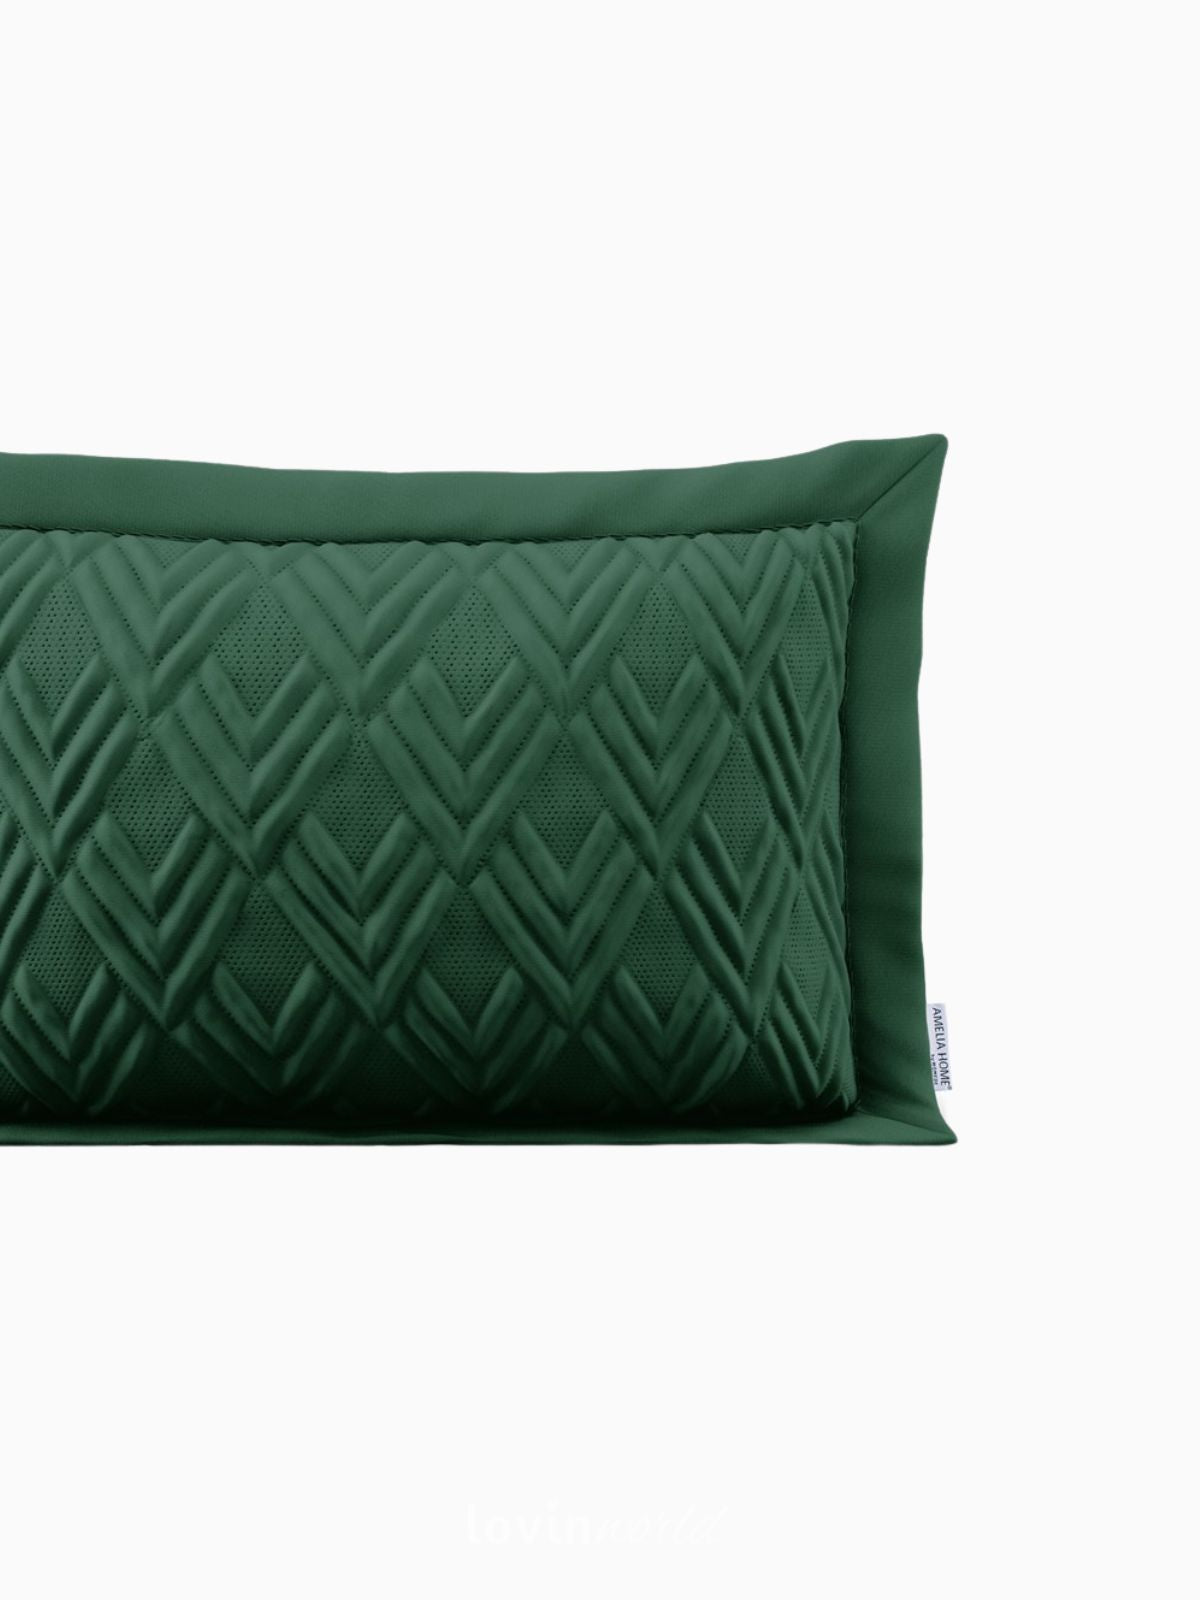 Cuscino decorativo Ophelia in colore verde 50x70 cm.-6